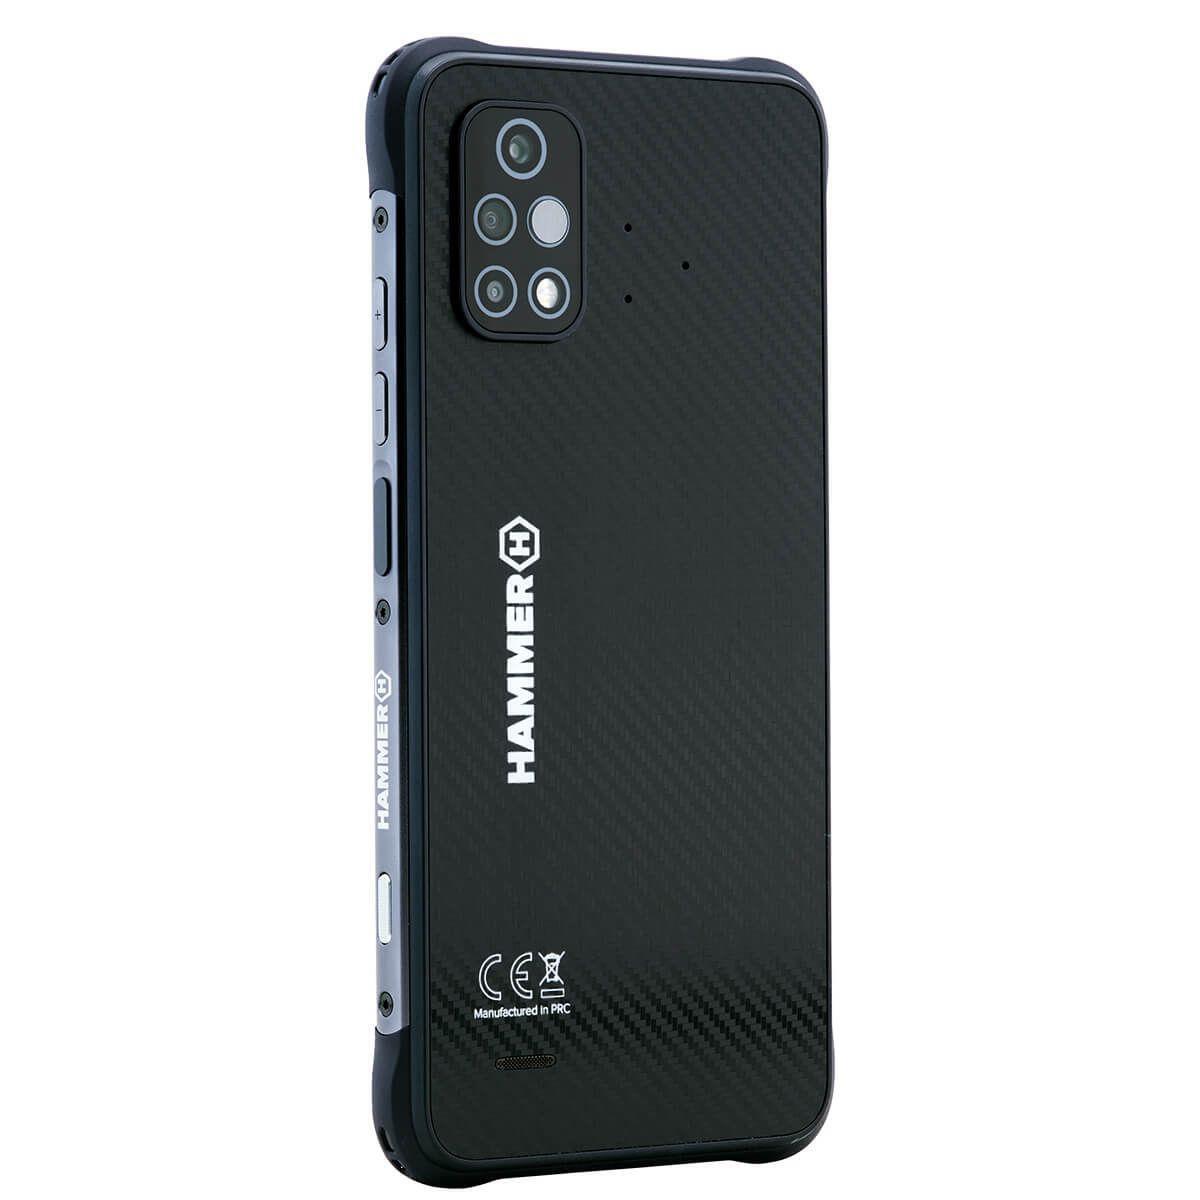 Odolný telefon myPhone Hammer Blade 4 6GB/128GB,černý